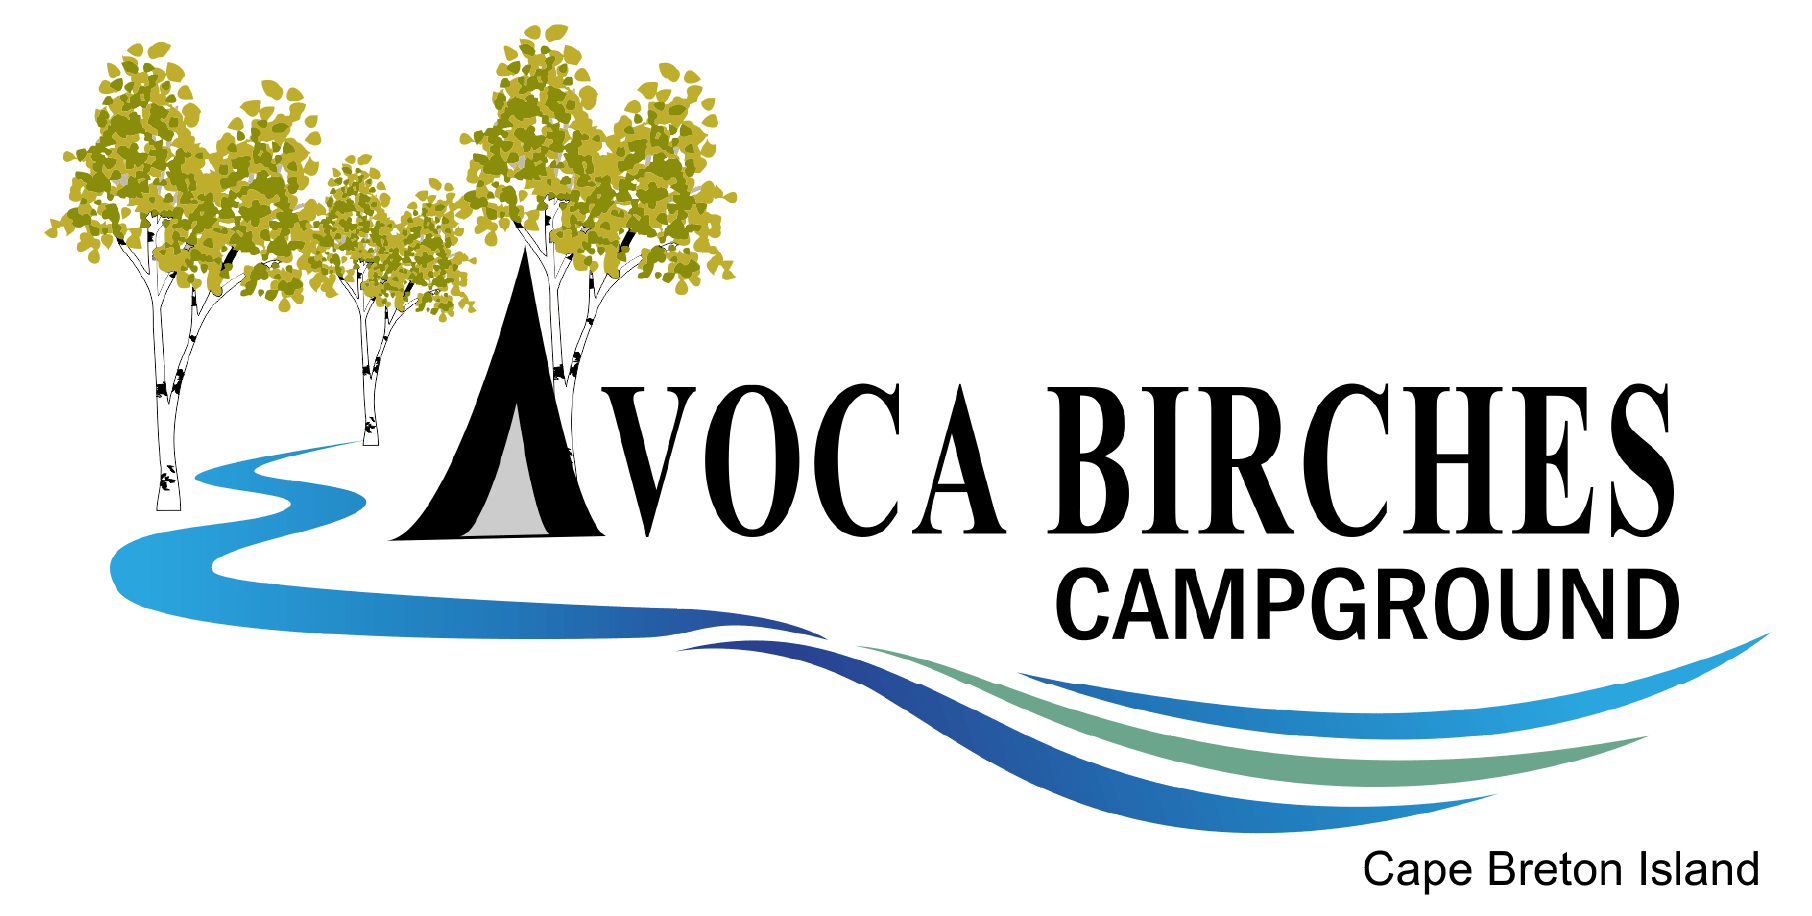 Avoca Birches Campground